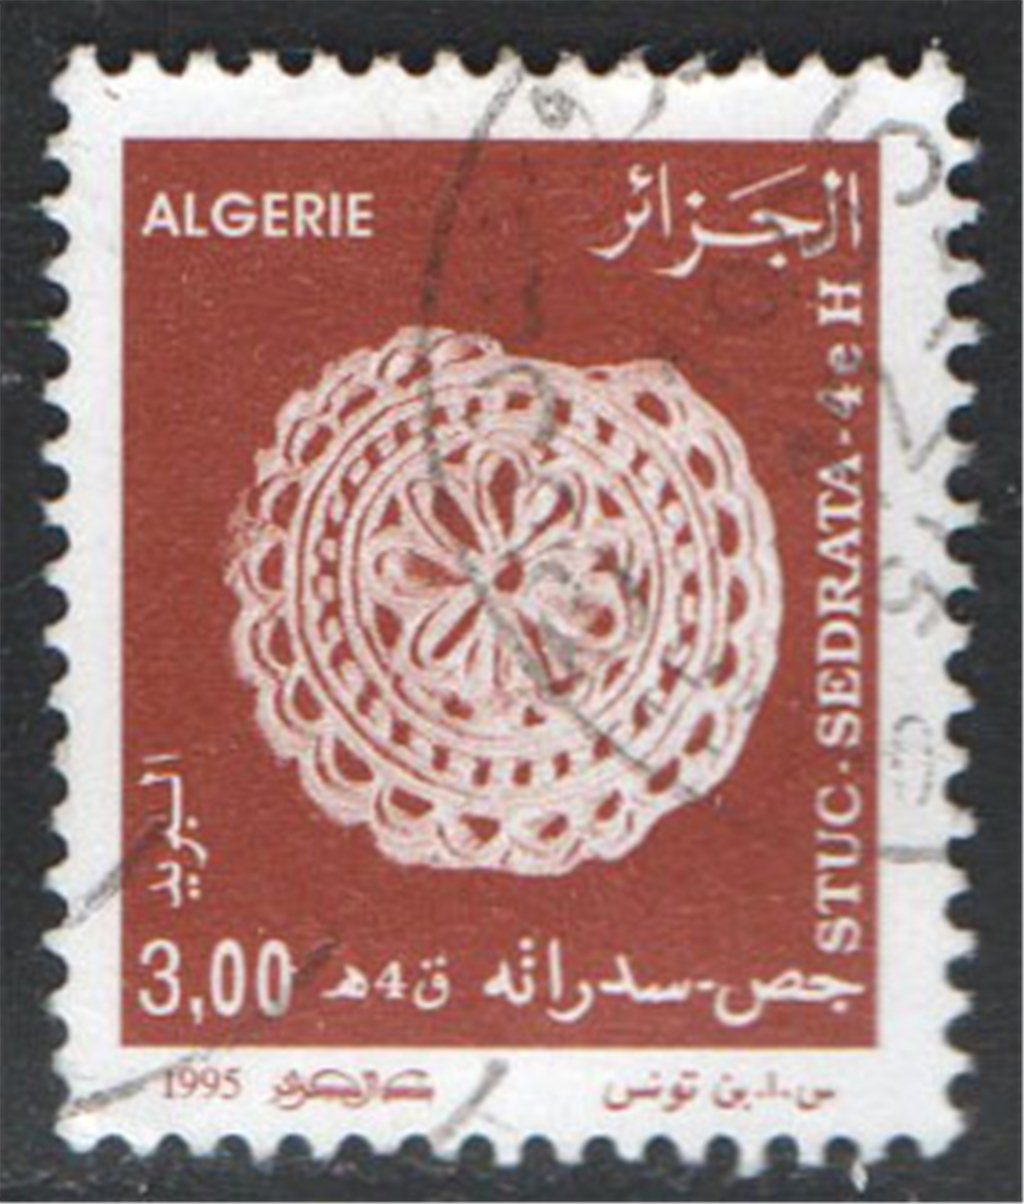 Algeria Scott 1039 Used - Click Image to Close